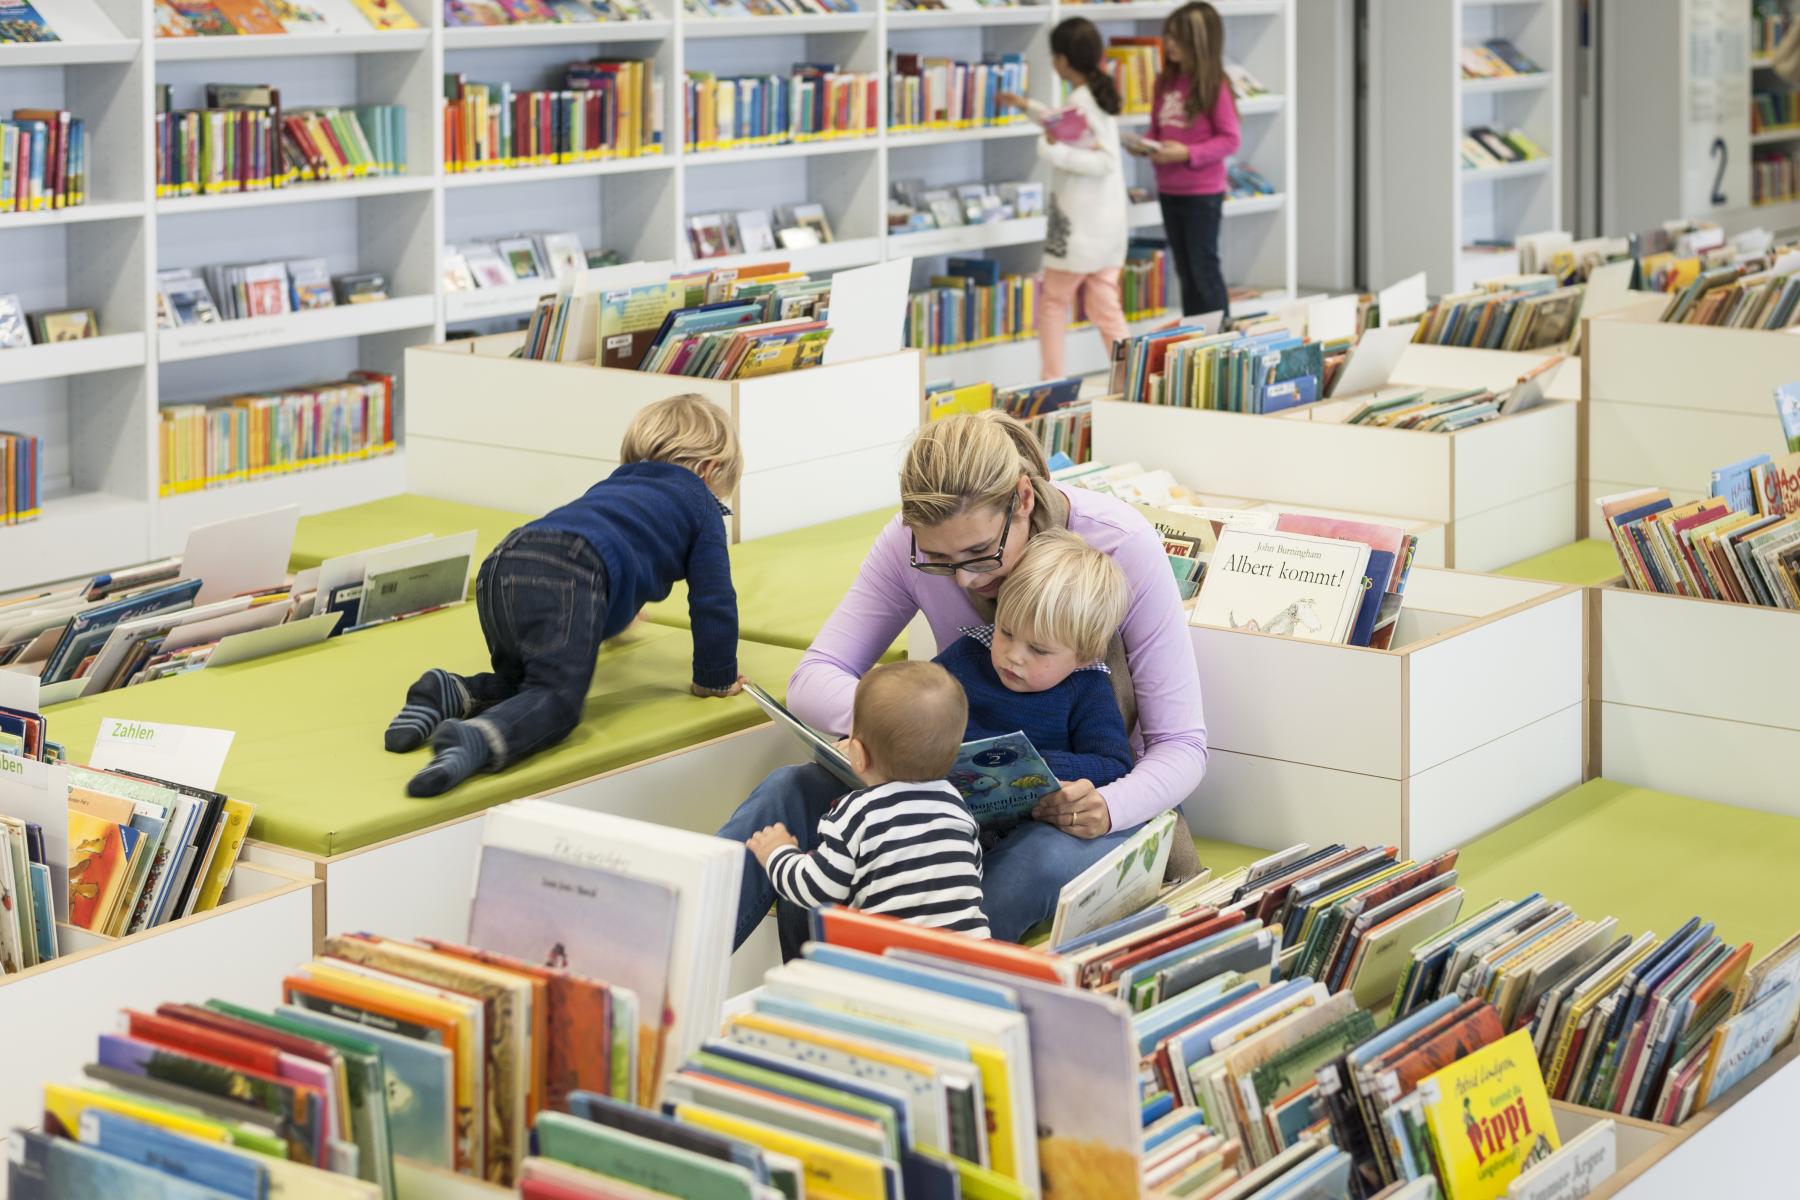 Vorlesesituation in der stadtbibliothek Stuttgart, bei der eineFrau ihren Kindern vorliest.